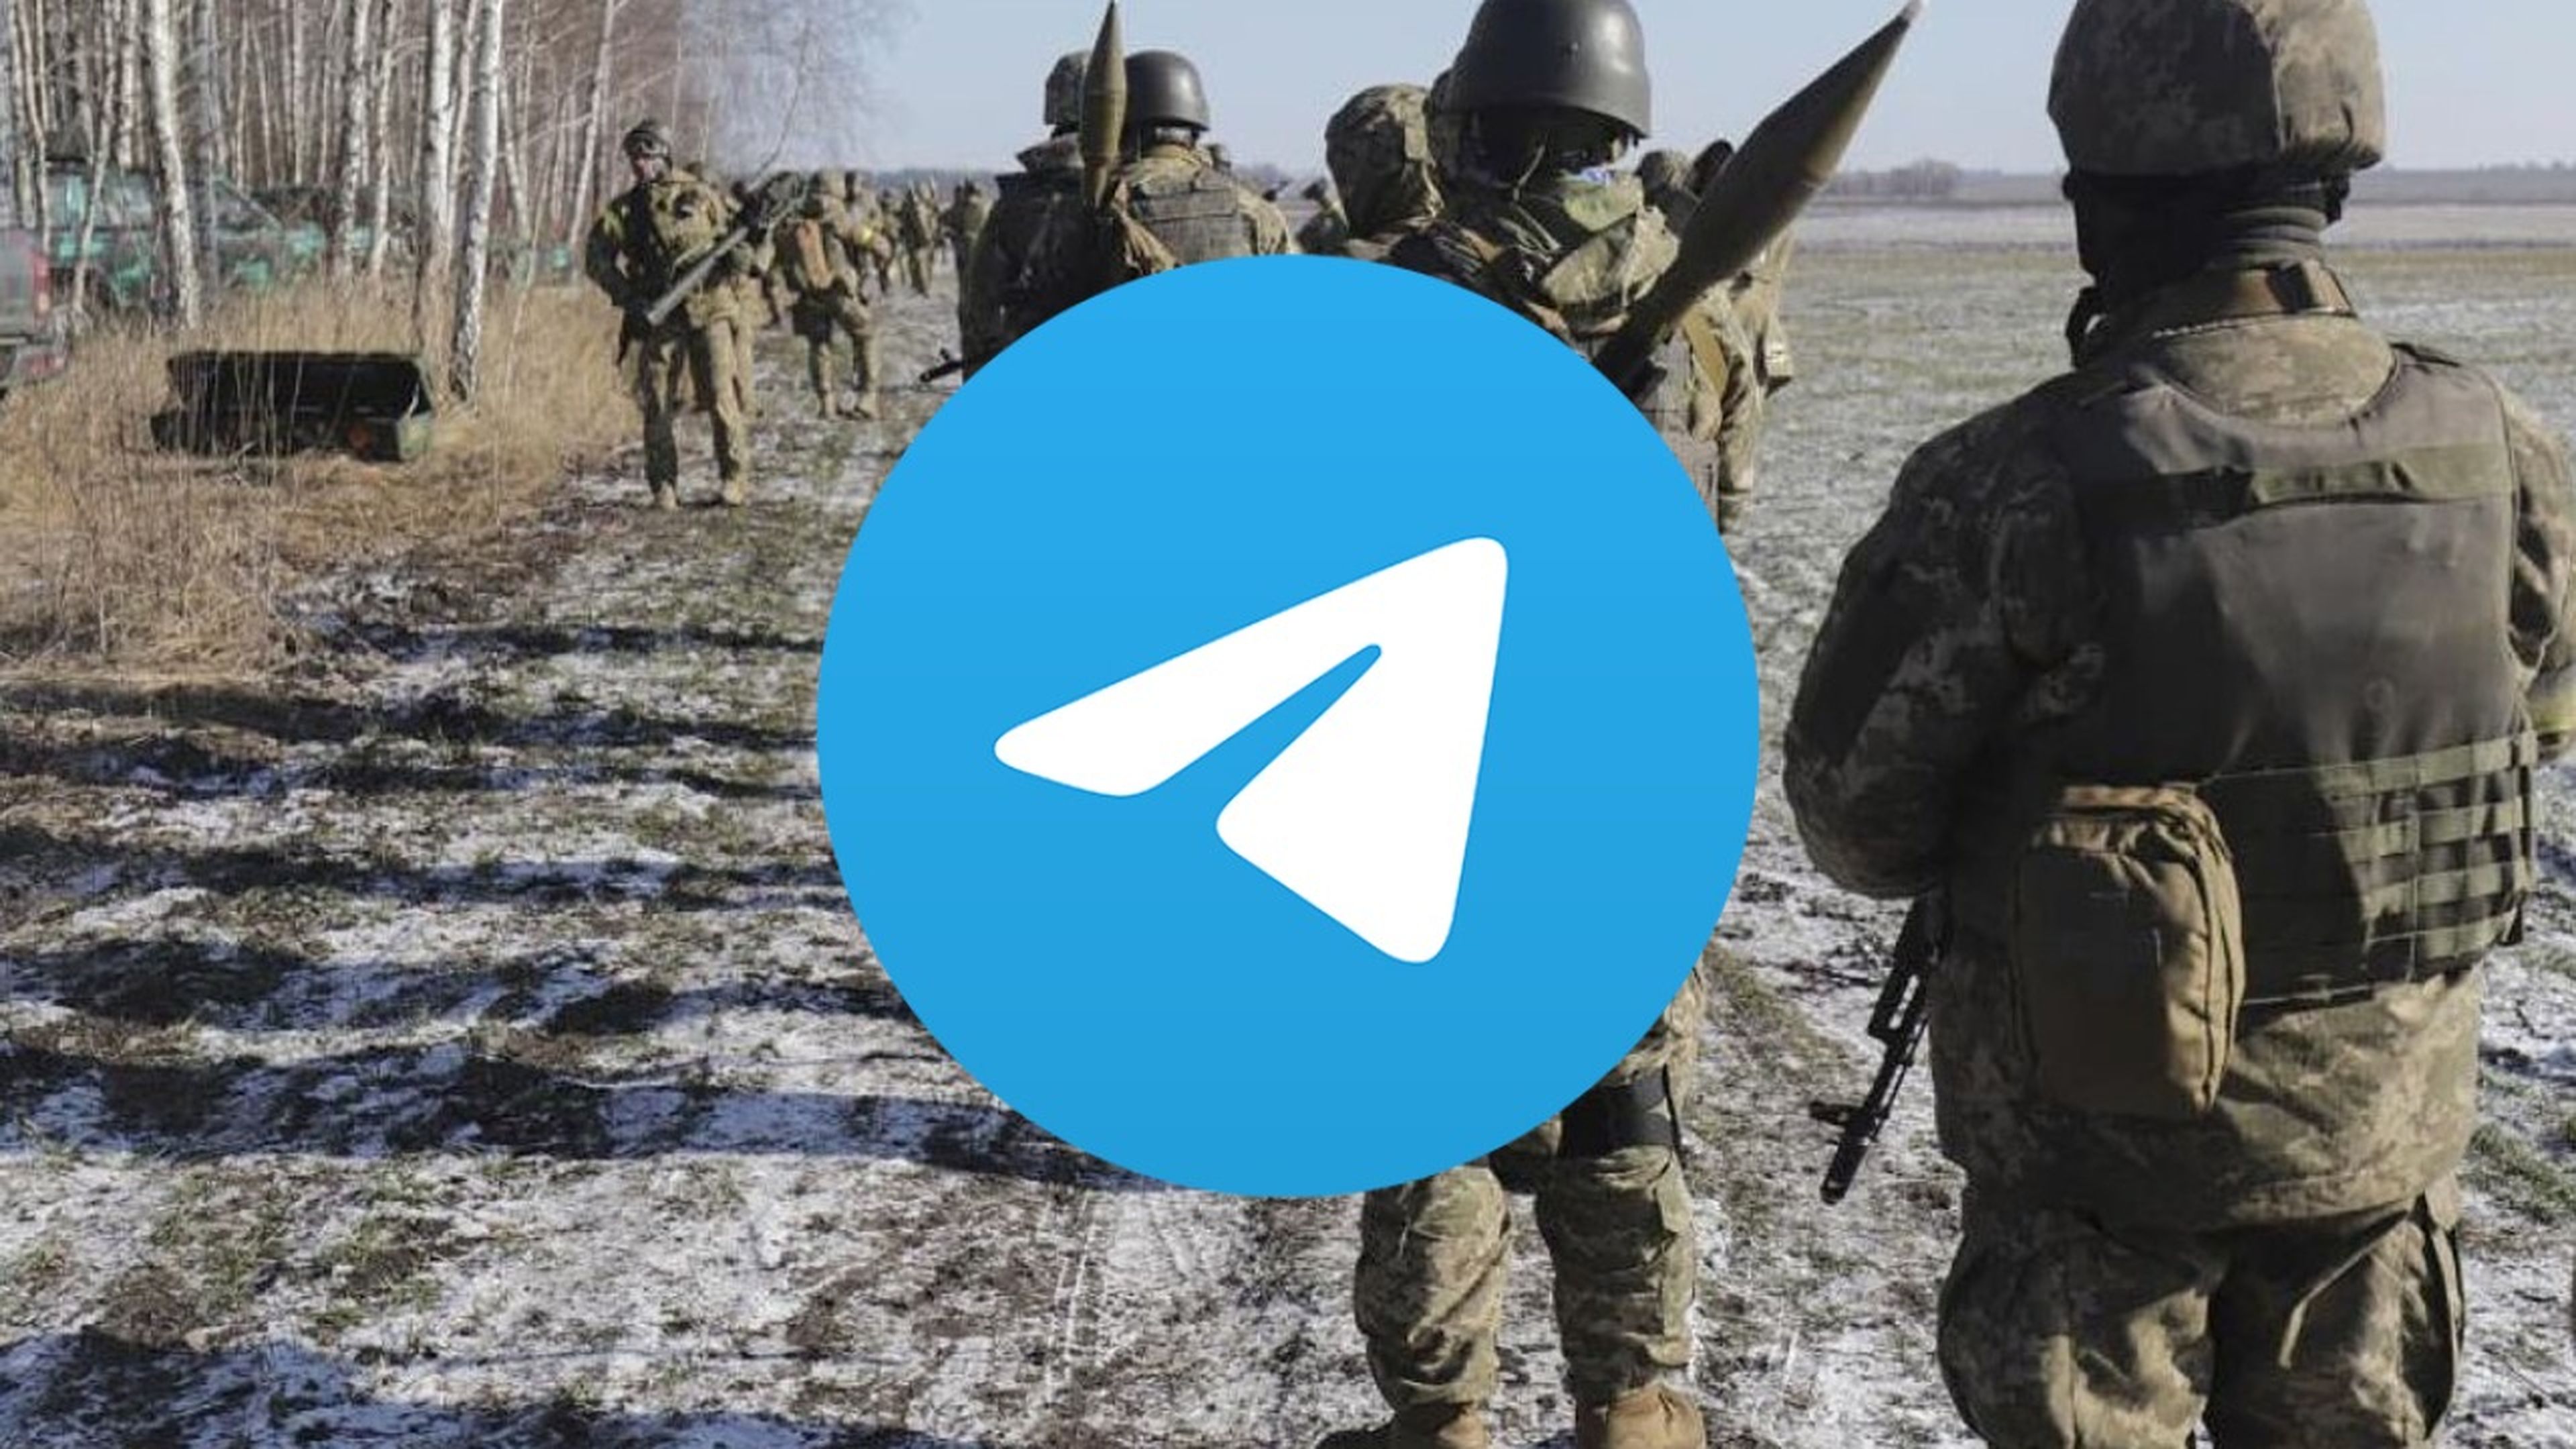 WhatsApp aprovecha el caos y carga contra Telegram criticando las "deficiencias" de su cifrado